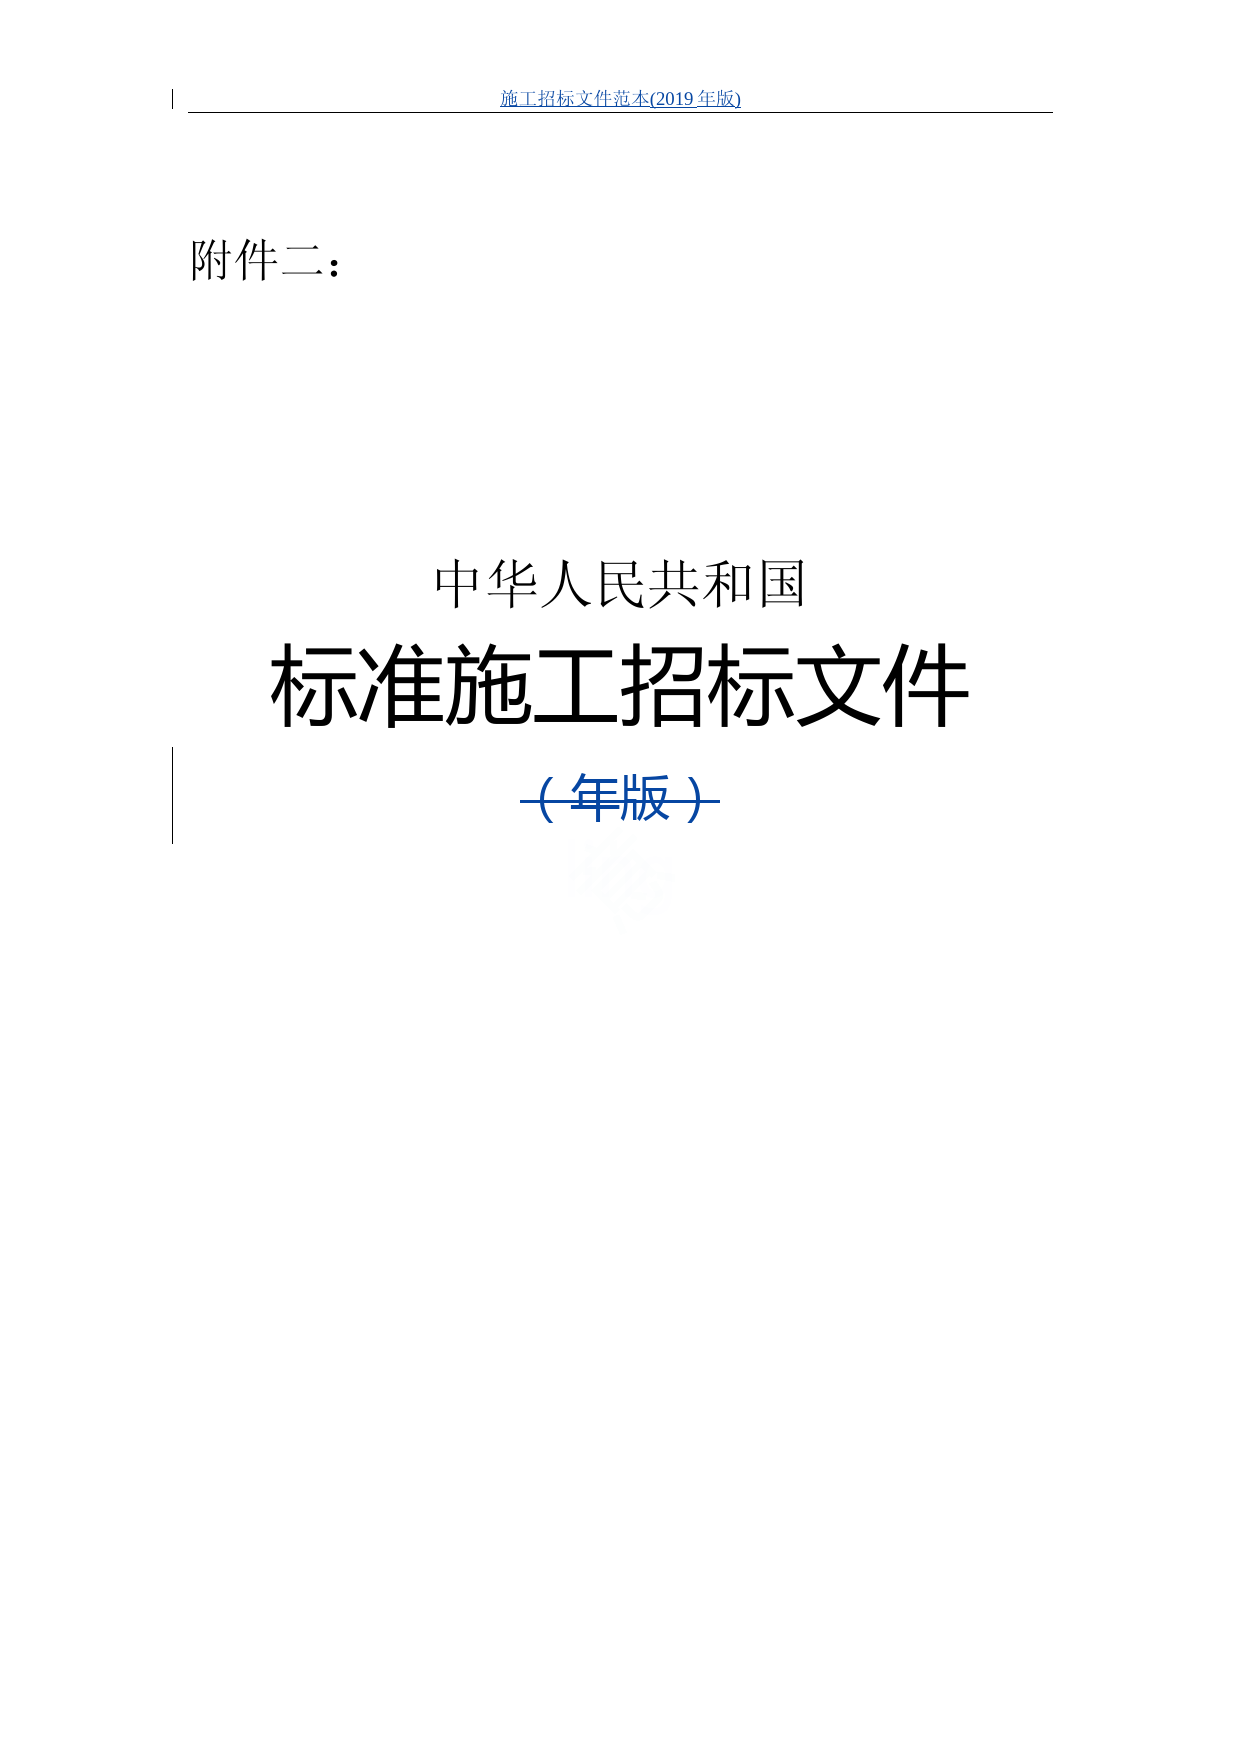 施工招标文件范本(2019年版) (1)